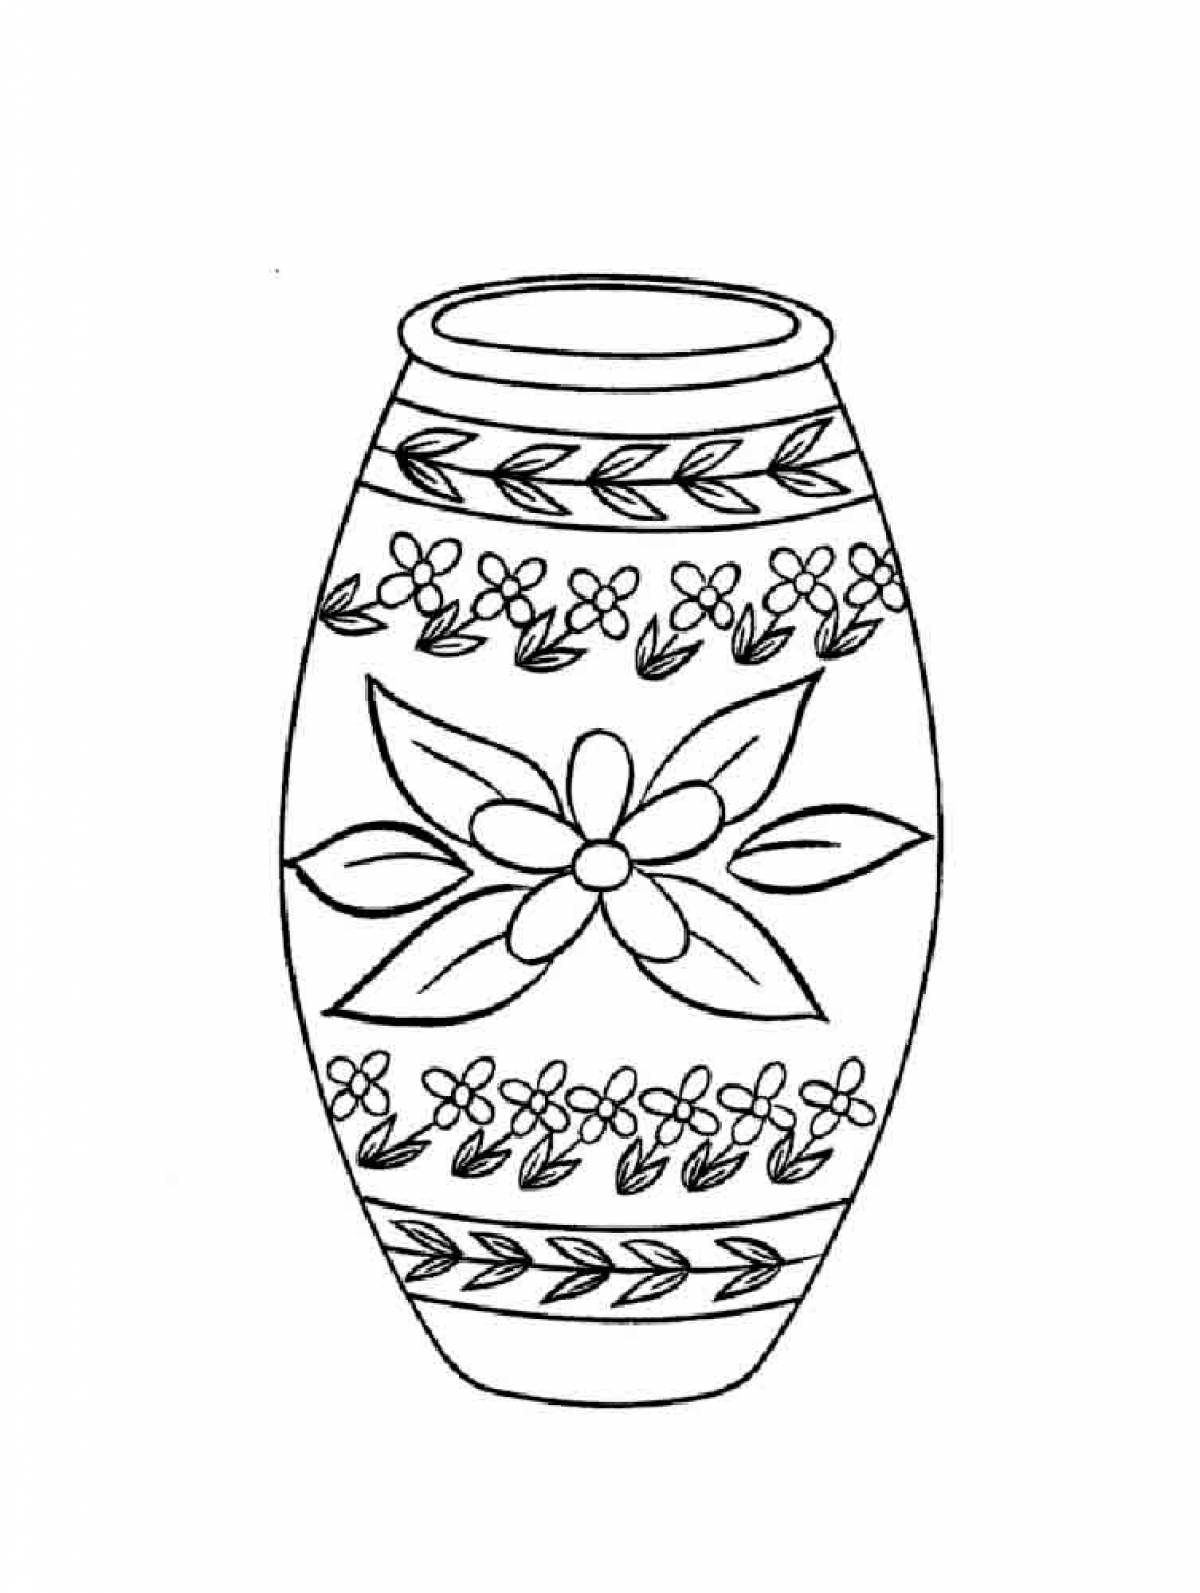 Вазы нарисовать картинки. Раскраска вазы. Орнамент вазы. Рисунок вазы. Ваза с узорами раскраска.